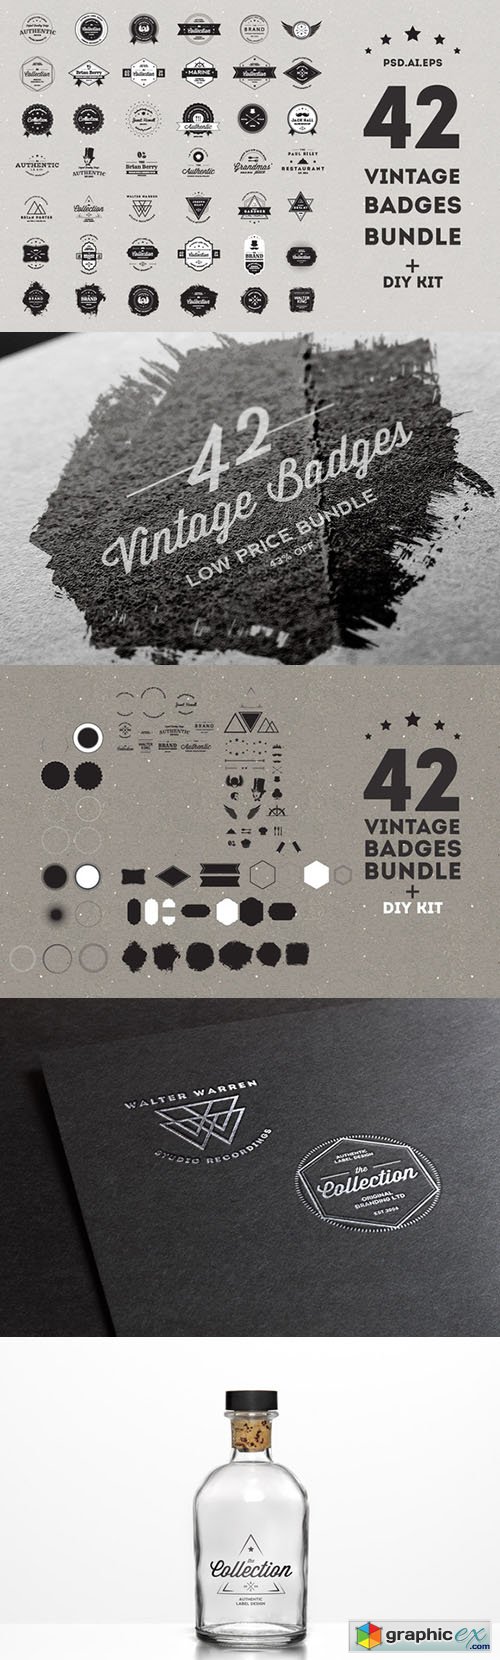 Vintage Badges Bundle - 50% off